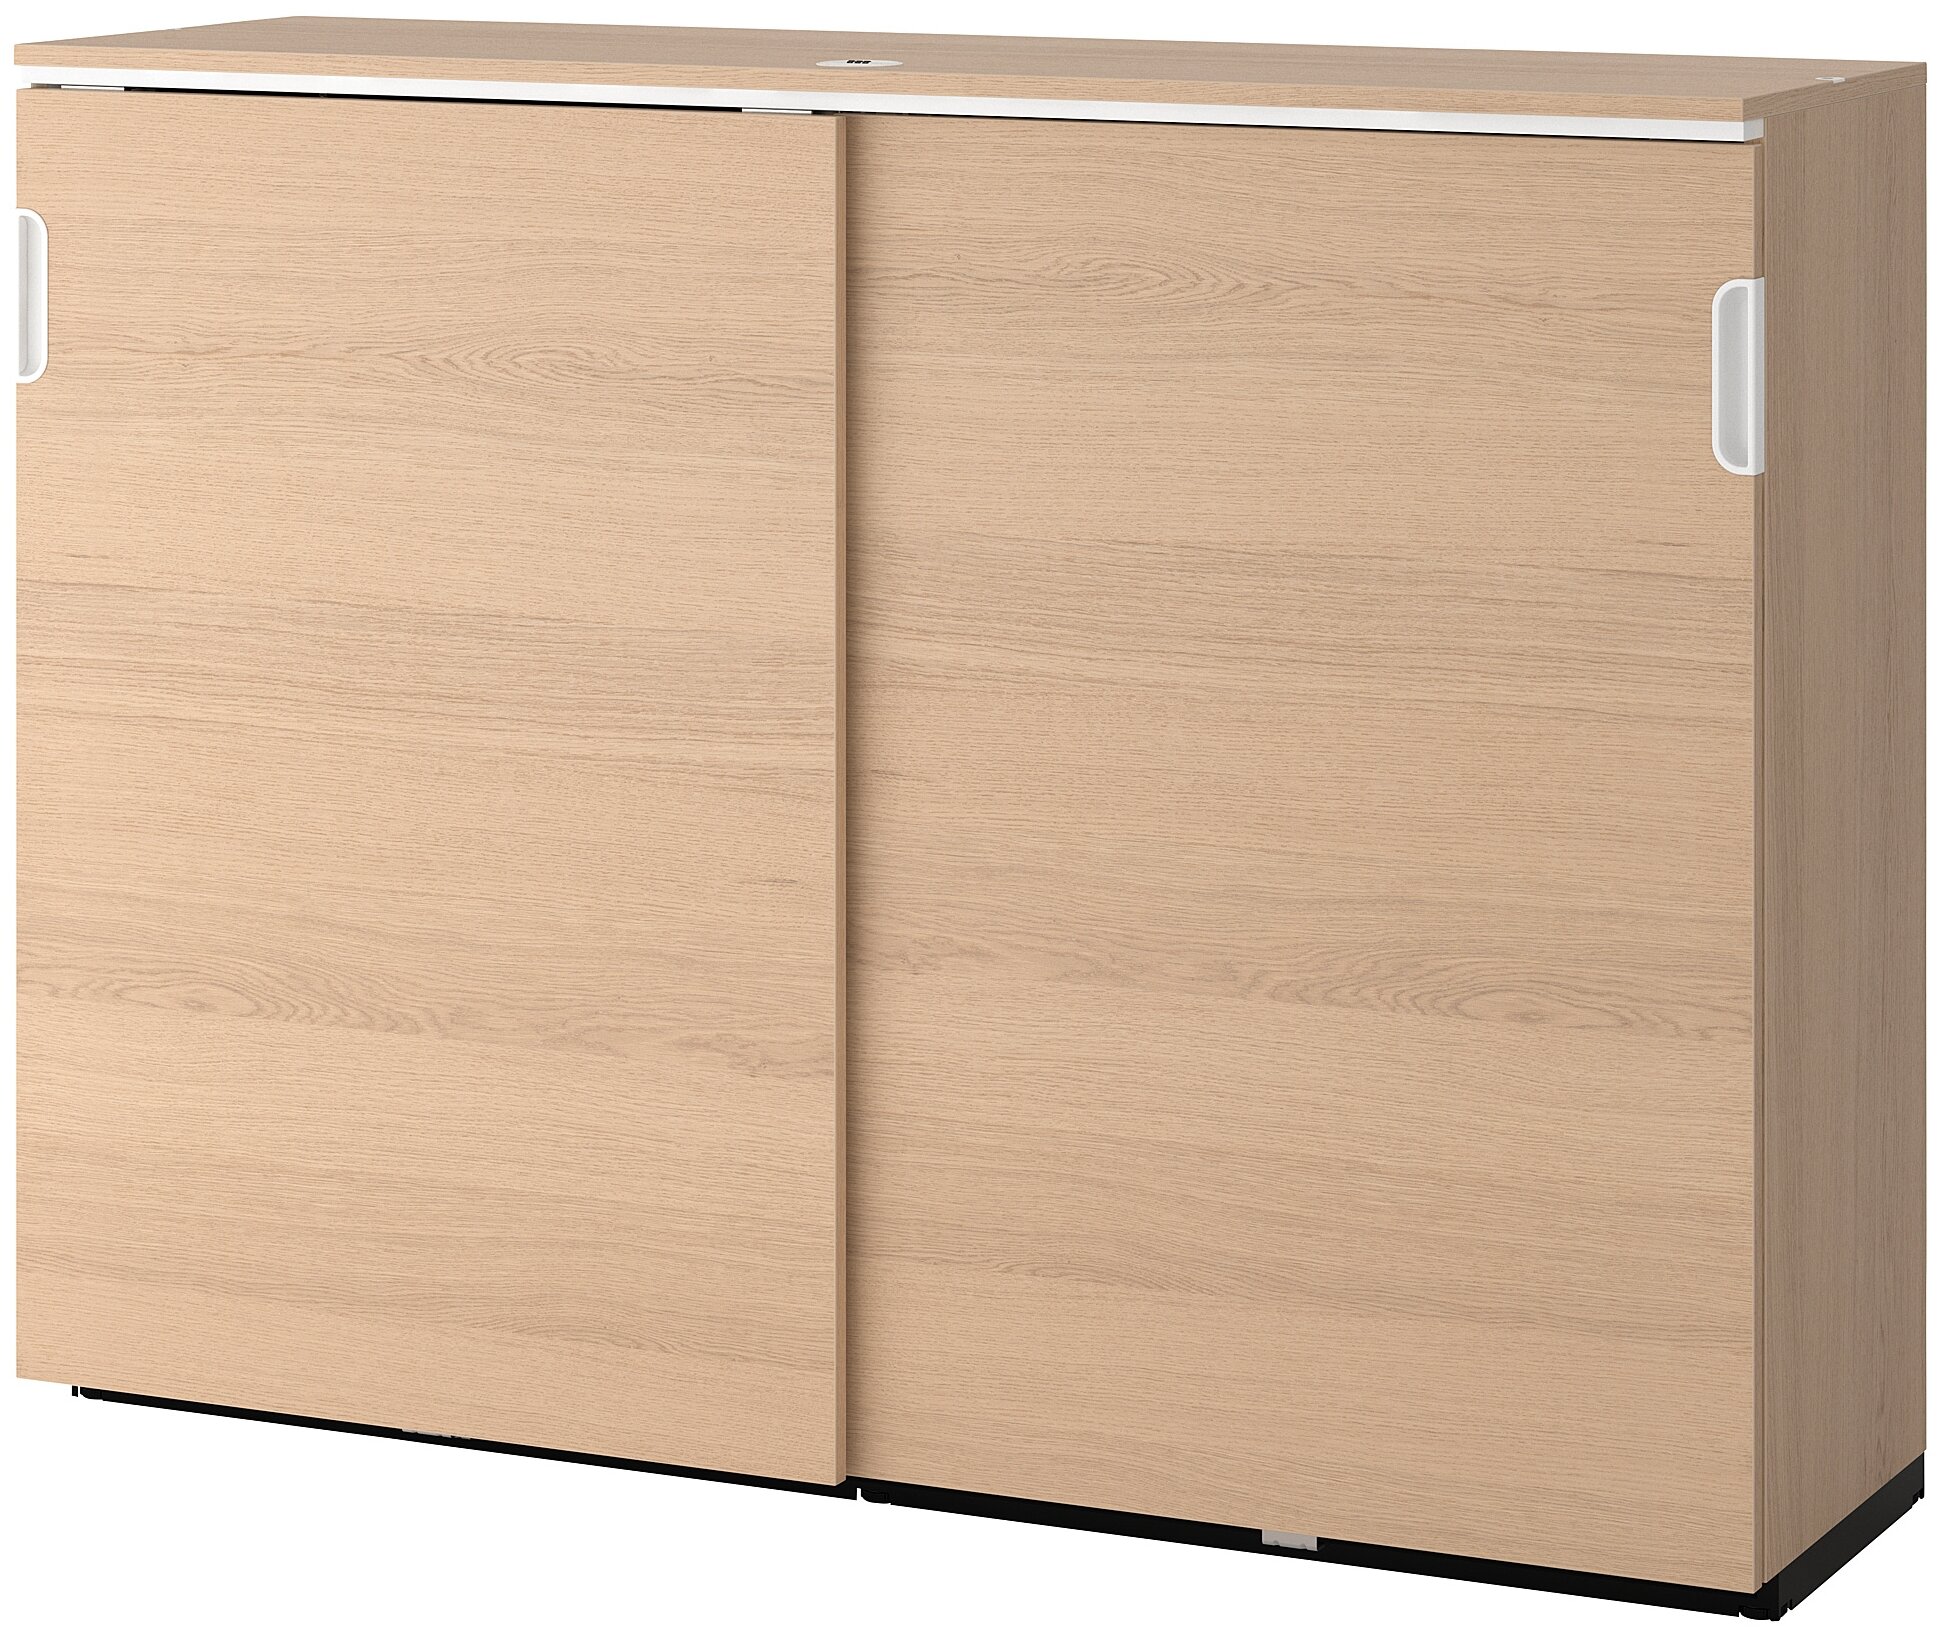 GALANT галант шкаф с раздвижными дверцами 160x120 см дубовый шпон, беленый - фотография № 1